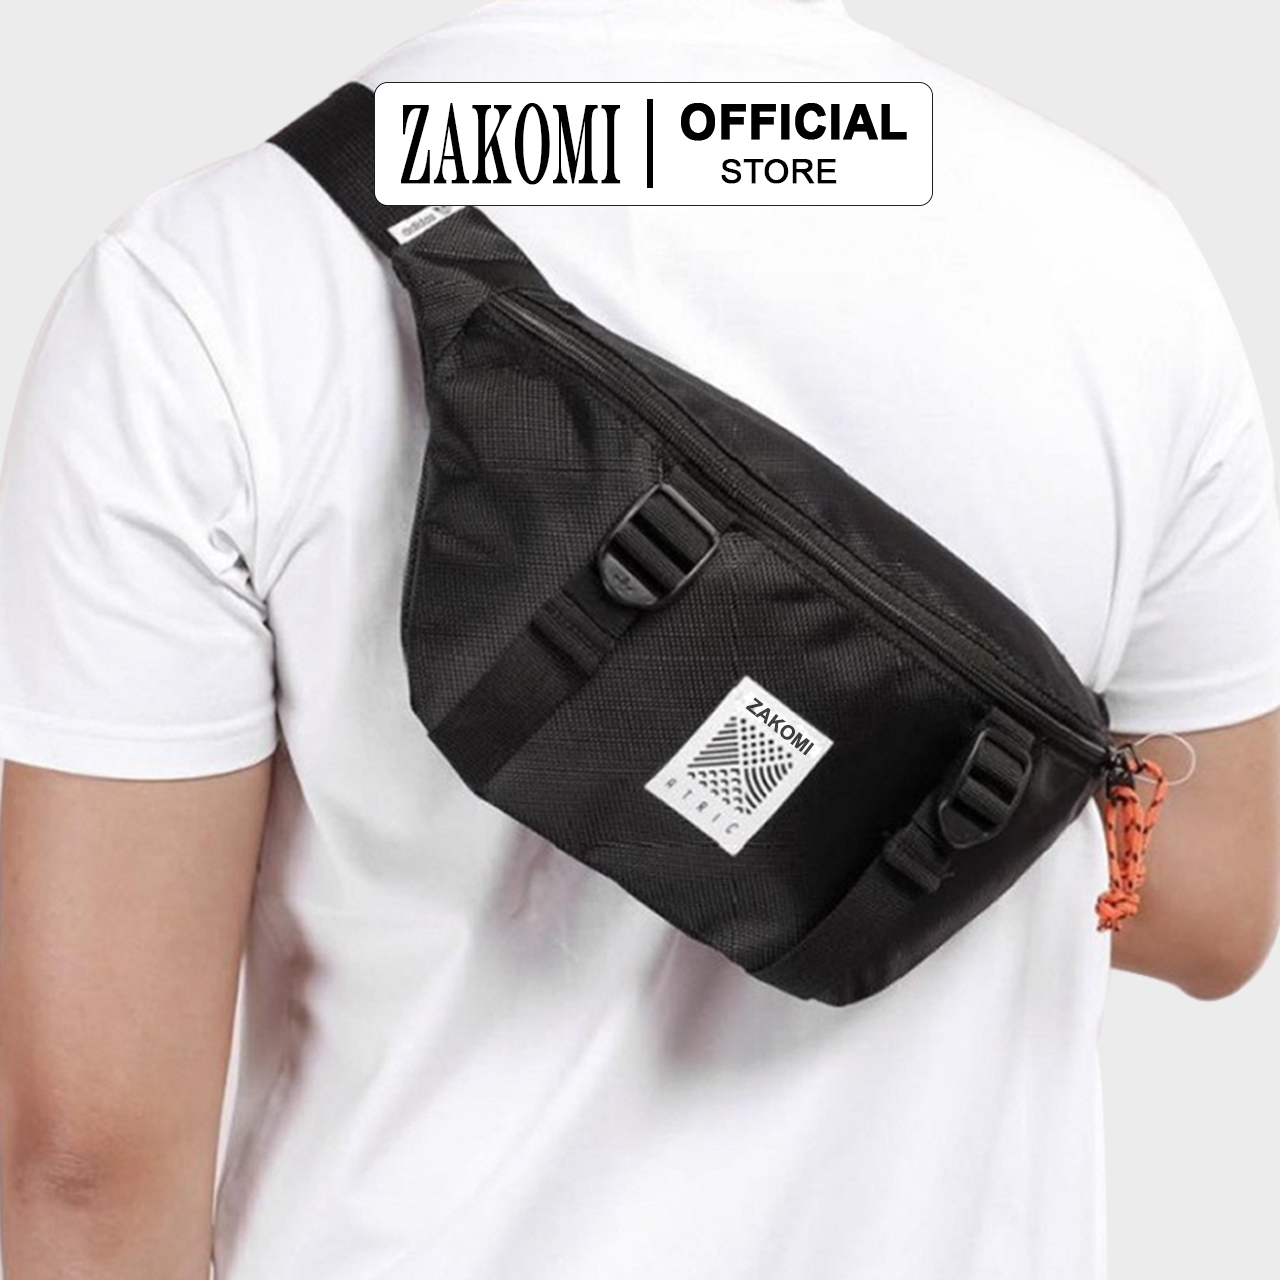 Túi đeo chéo bao tử Zakomi thời trang Unisex, phong cách cá tính, túi đeo trước ngực chất liệu vải chống nước cao cấp